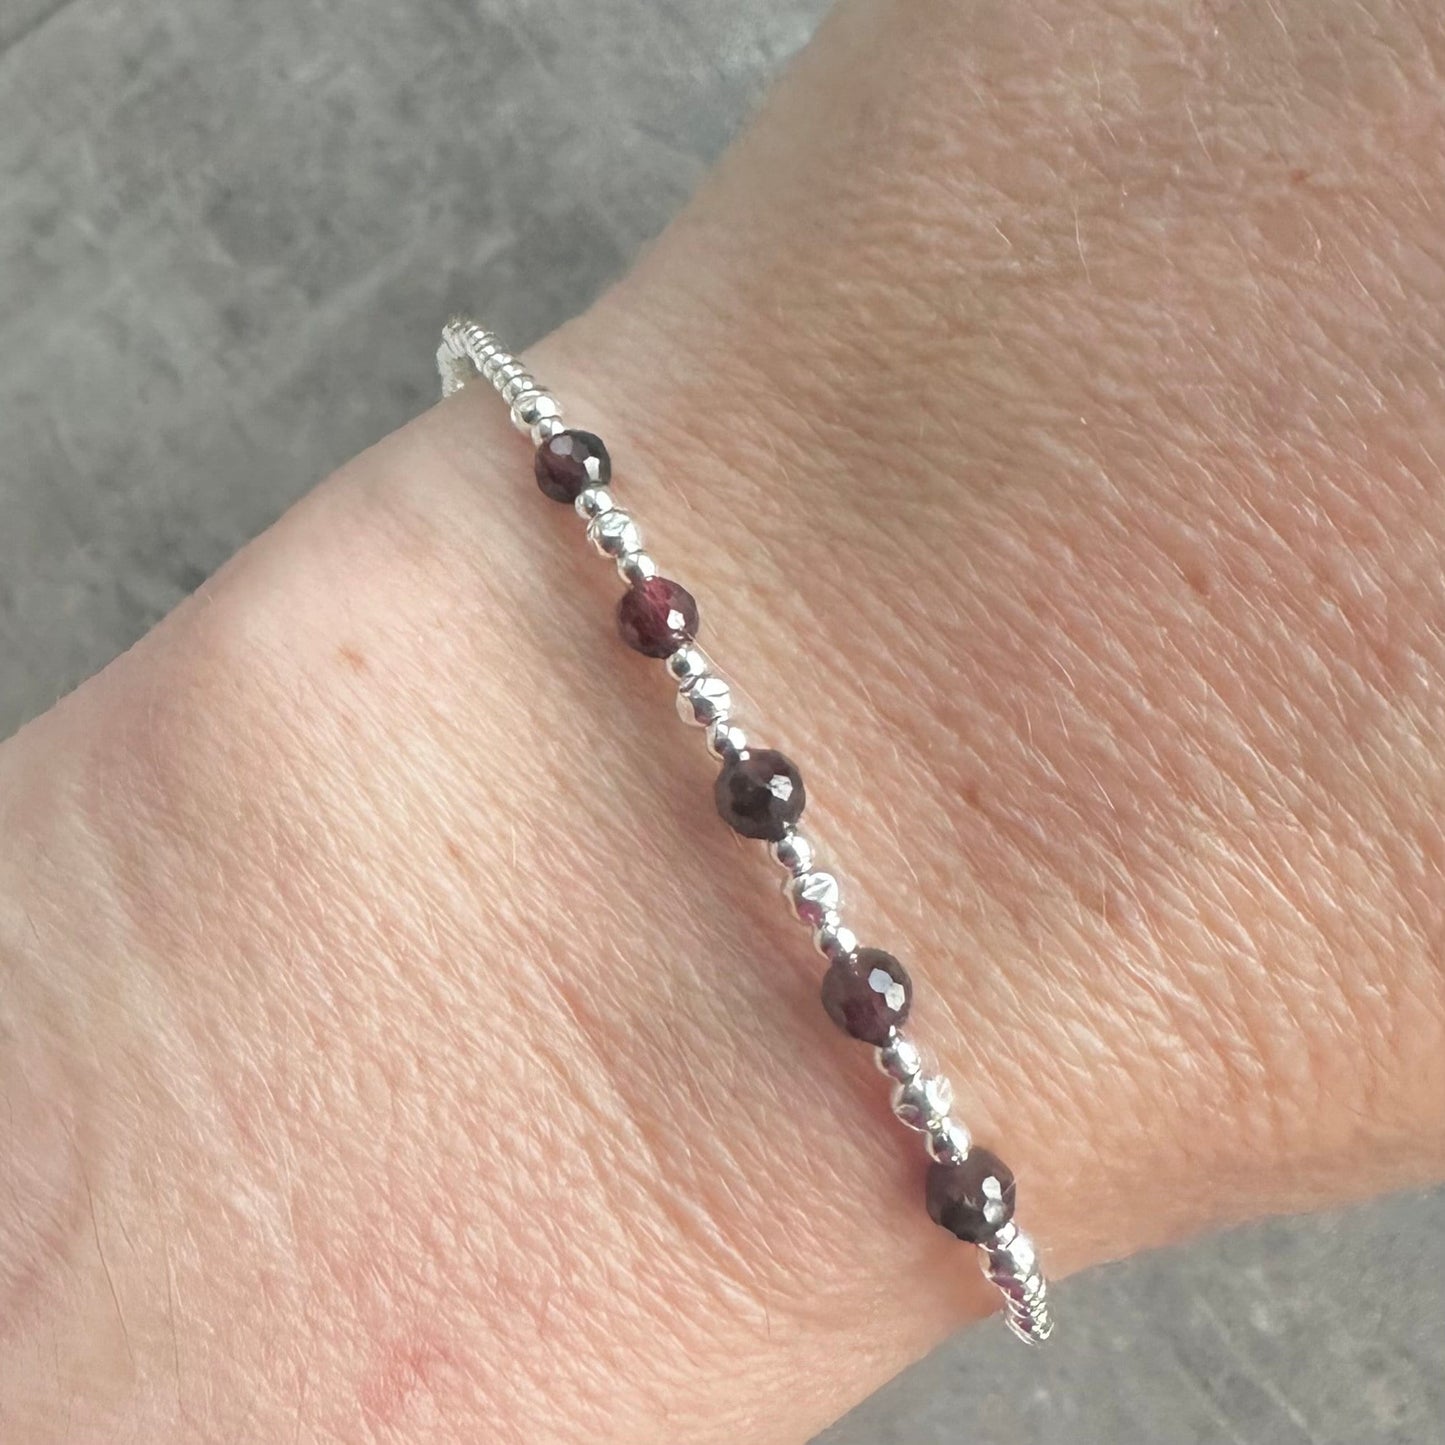 Garnet Bracelet the January Birthstone sterling silver bracelet birthday gift for women nft